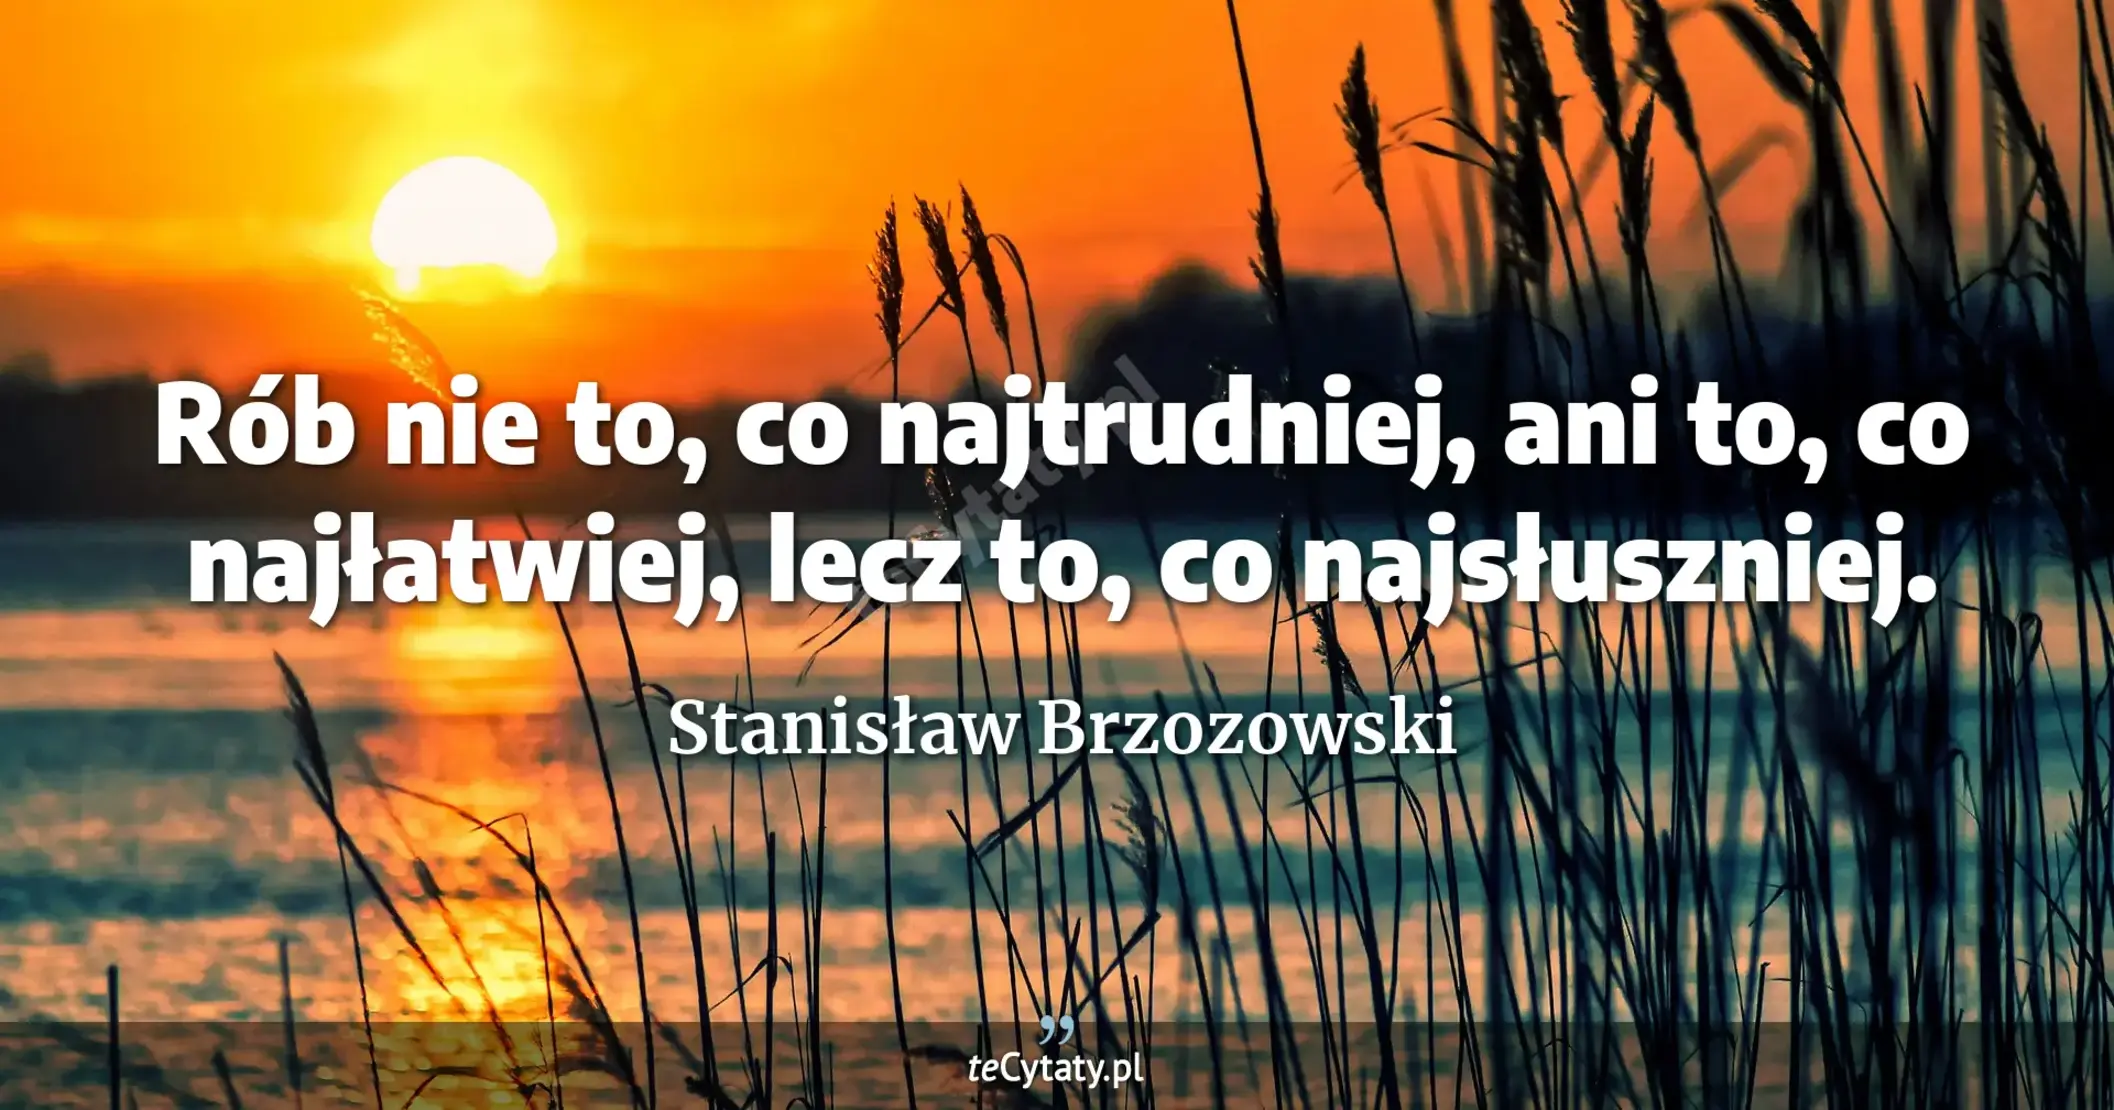 Rób nie to, co najtrudniej, ani to, co najłatwiej, lecz to, co najsłuszniej. - Stanisław Brzozowski